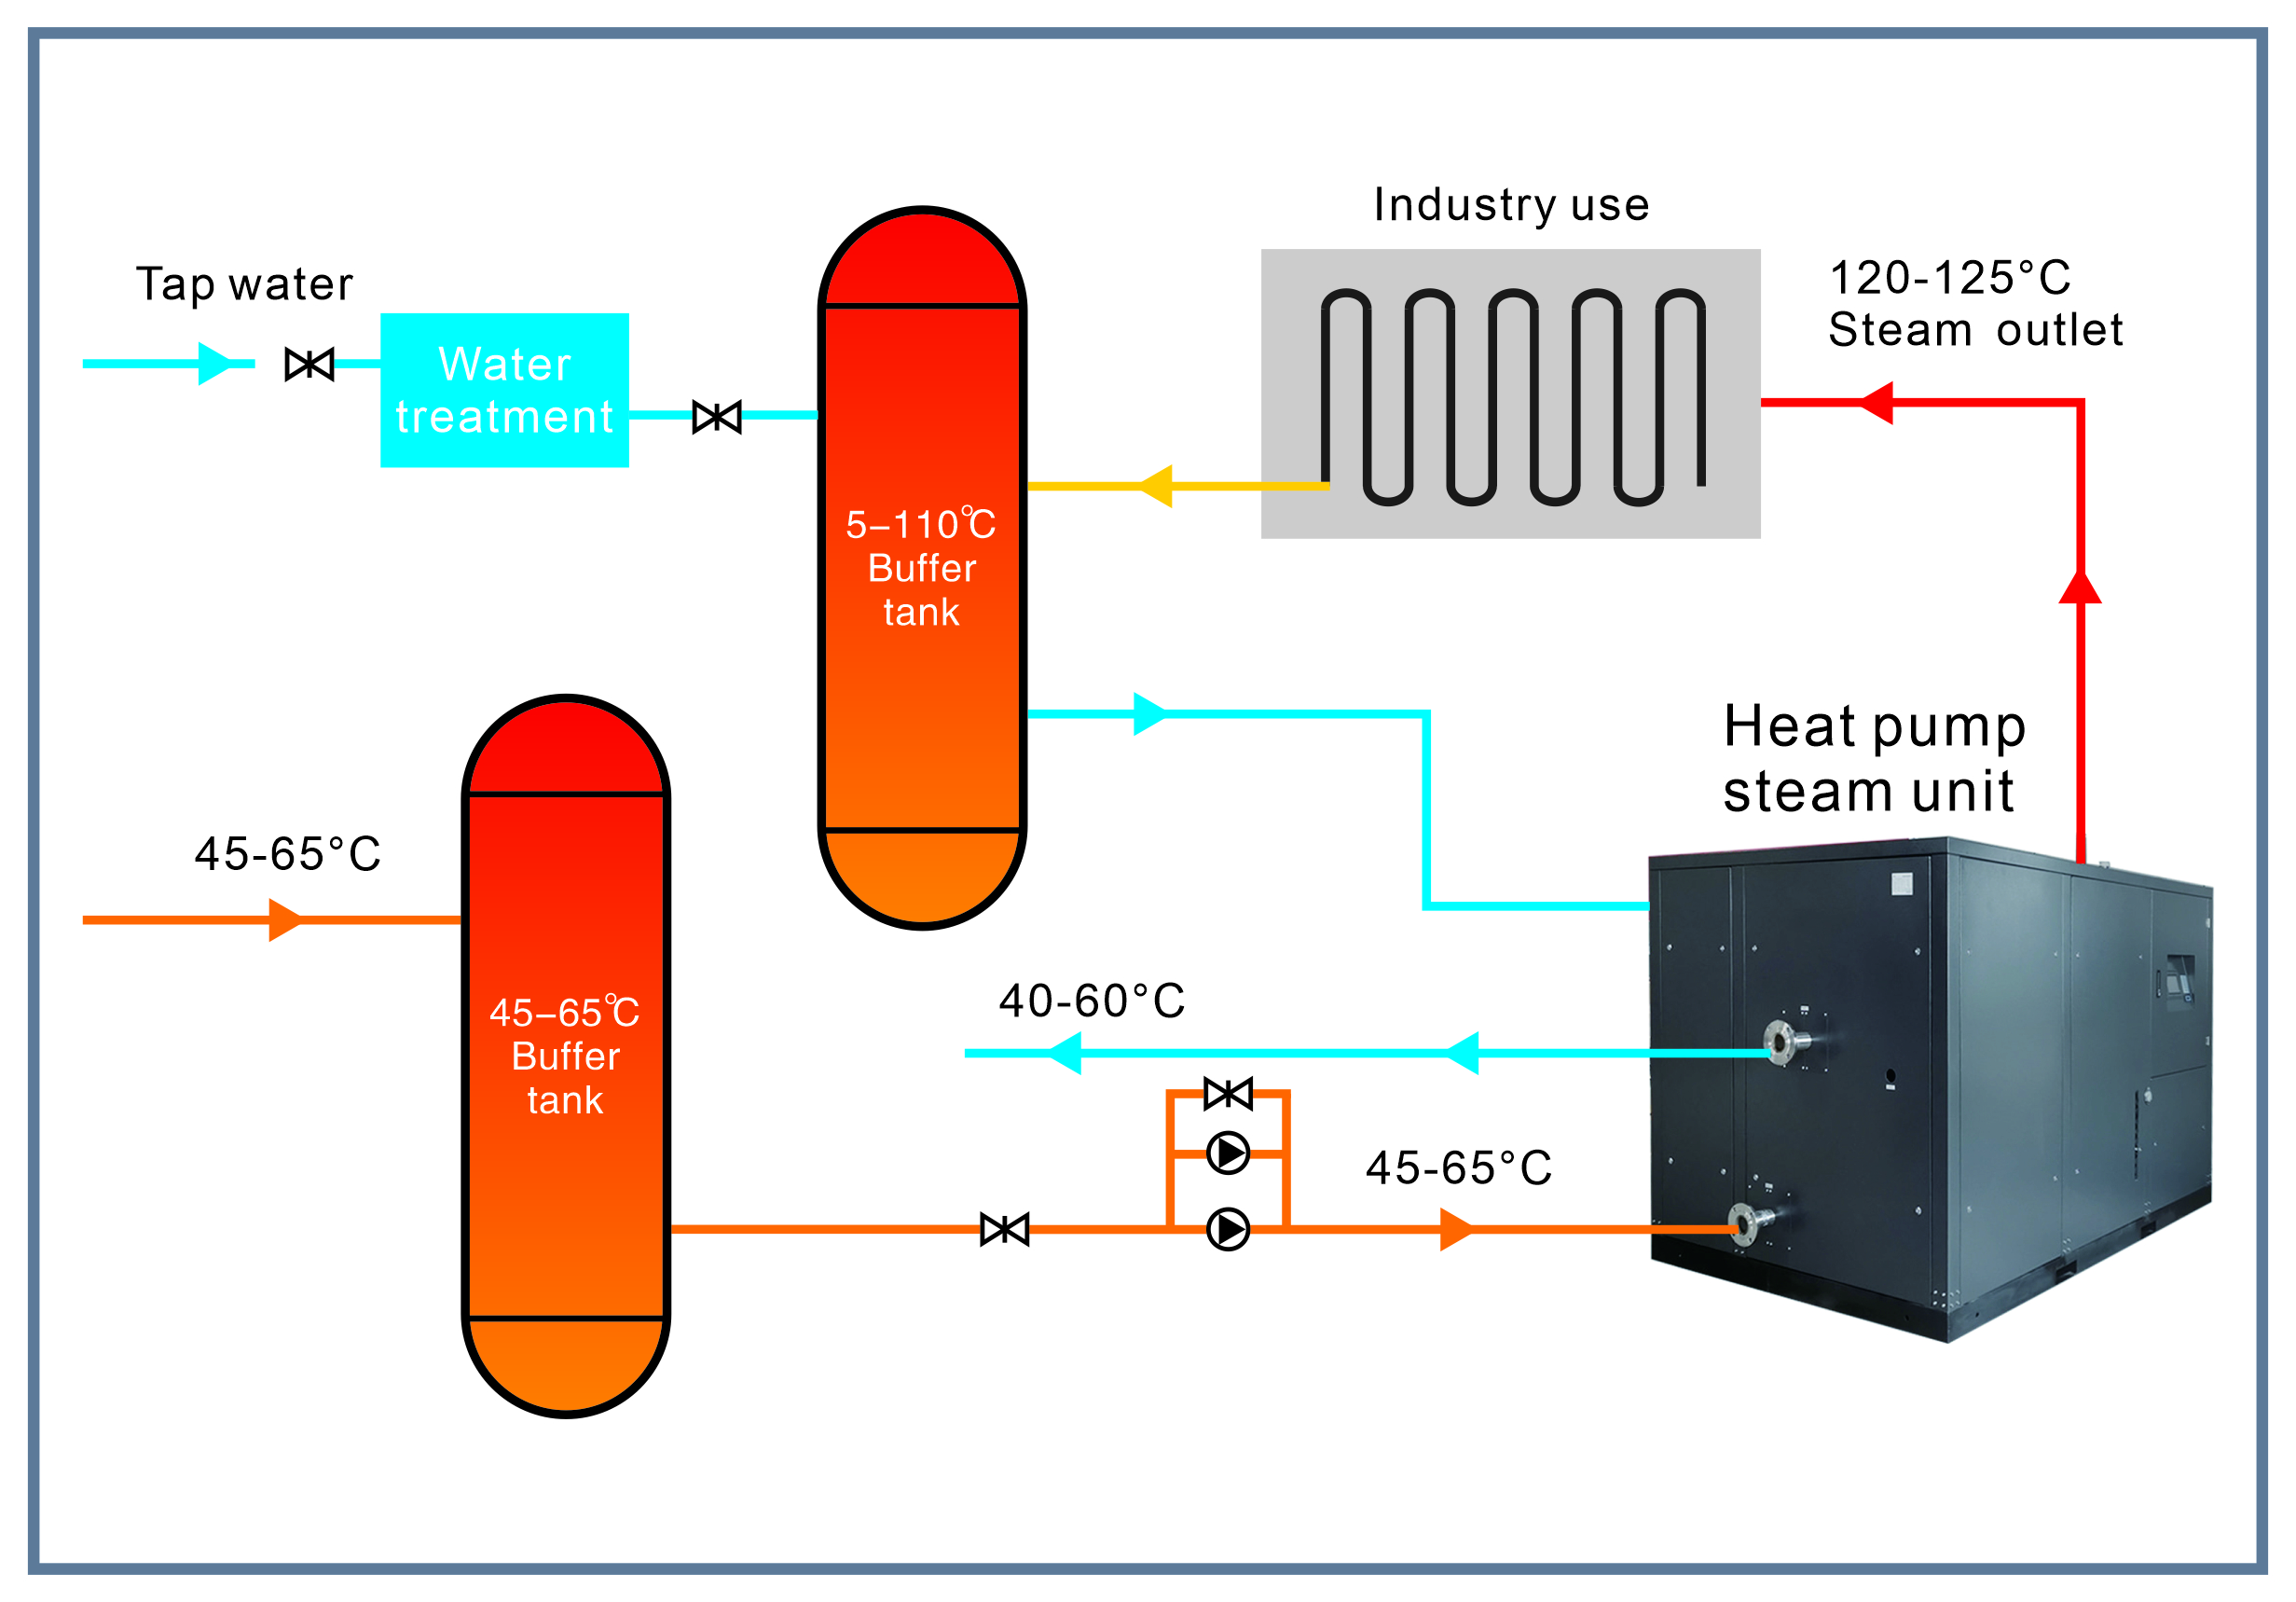 Ultra high temperature heat pump